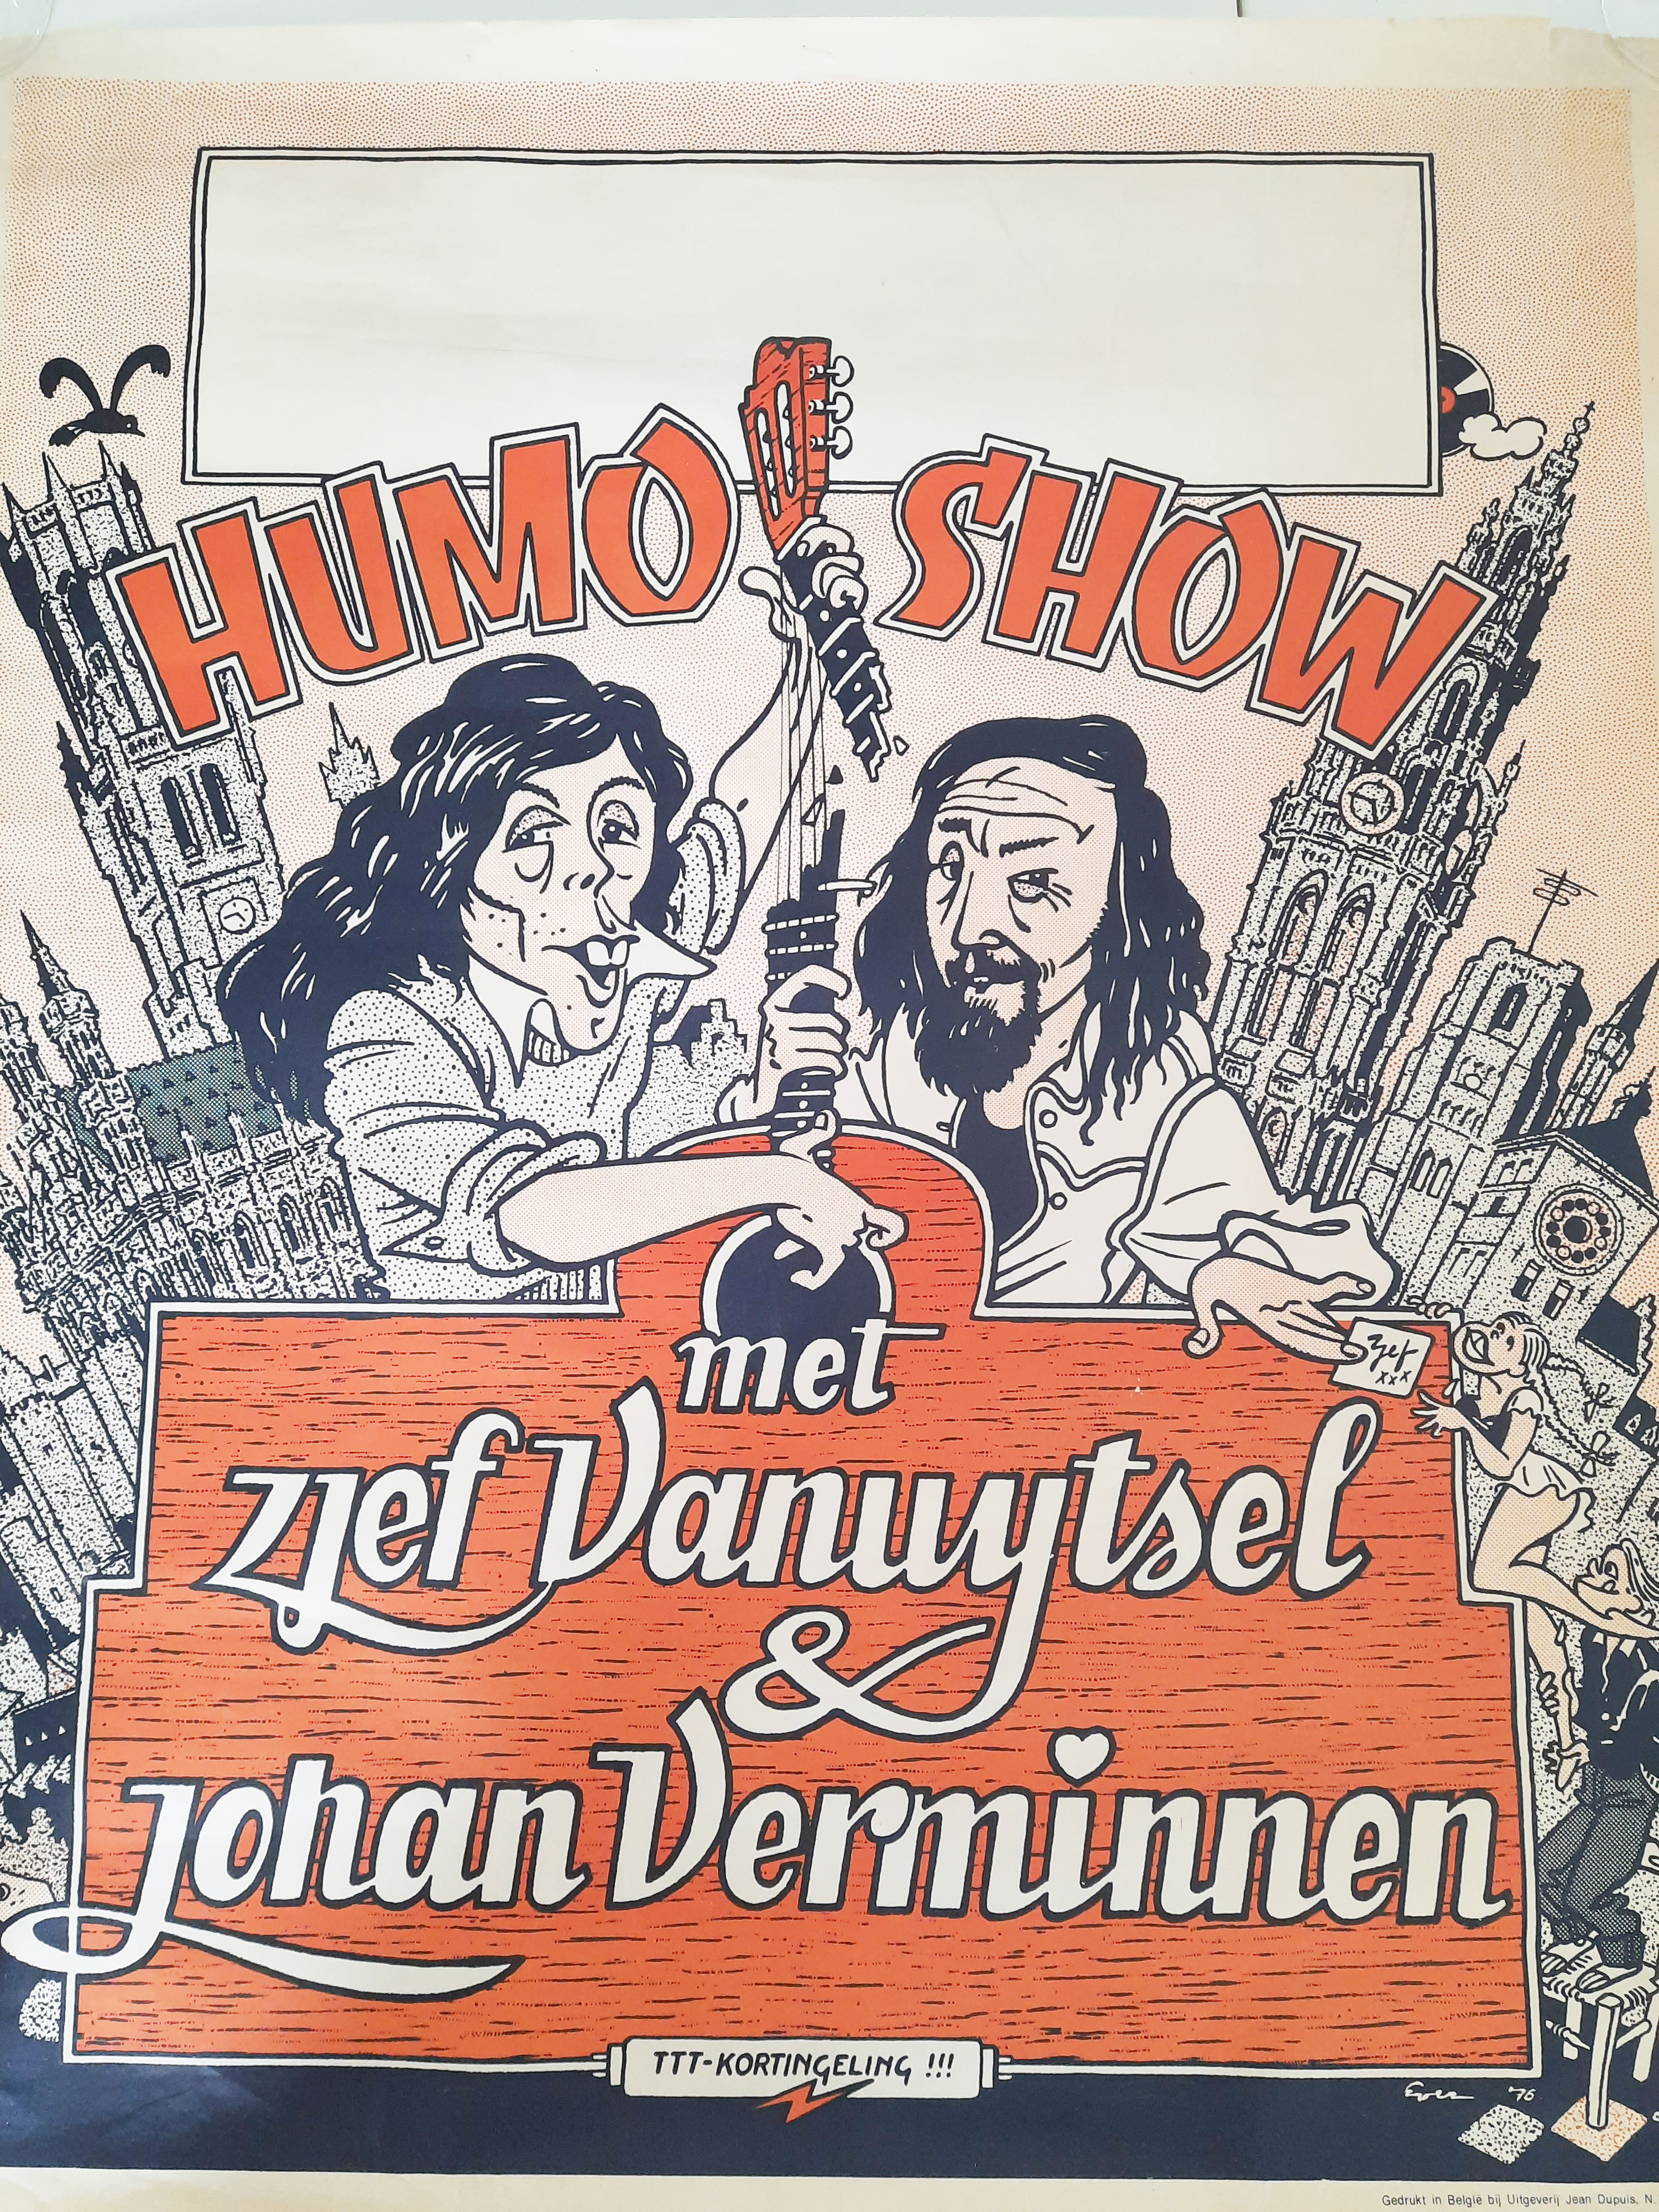 Affiche uit 1976 van Humo van Johan samen met Zjef Van Uytsel